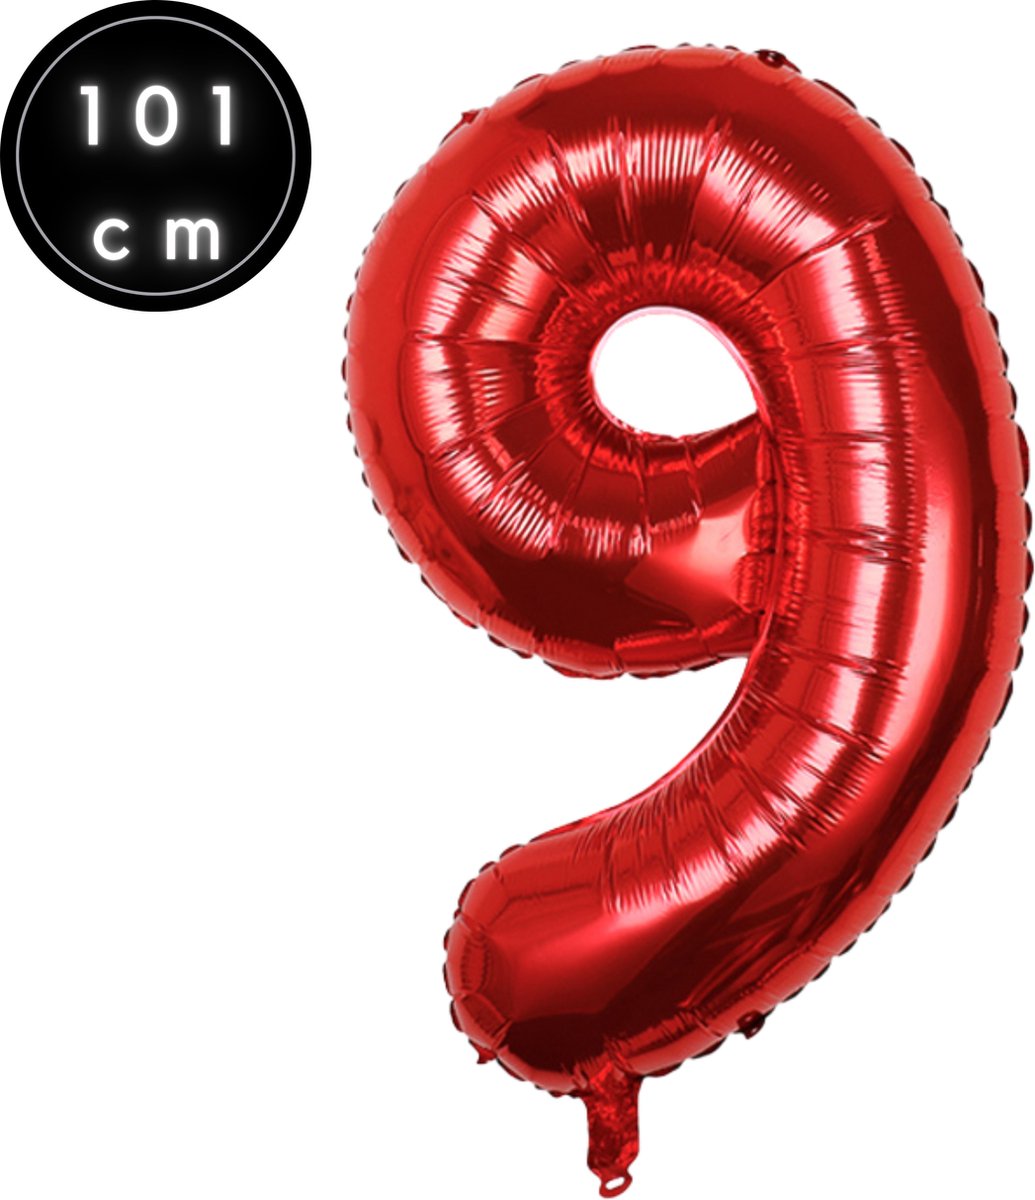 Fienosa Cijfer Ballonnen nummer 9 - Rood - 101 cm - XL Groot - Helium Ballon - Verjaardag Ballon